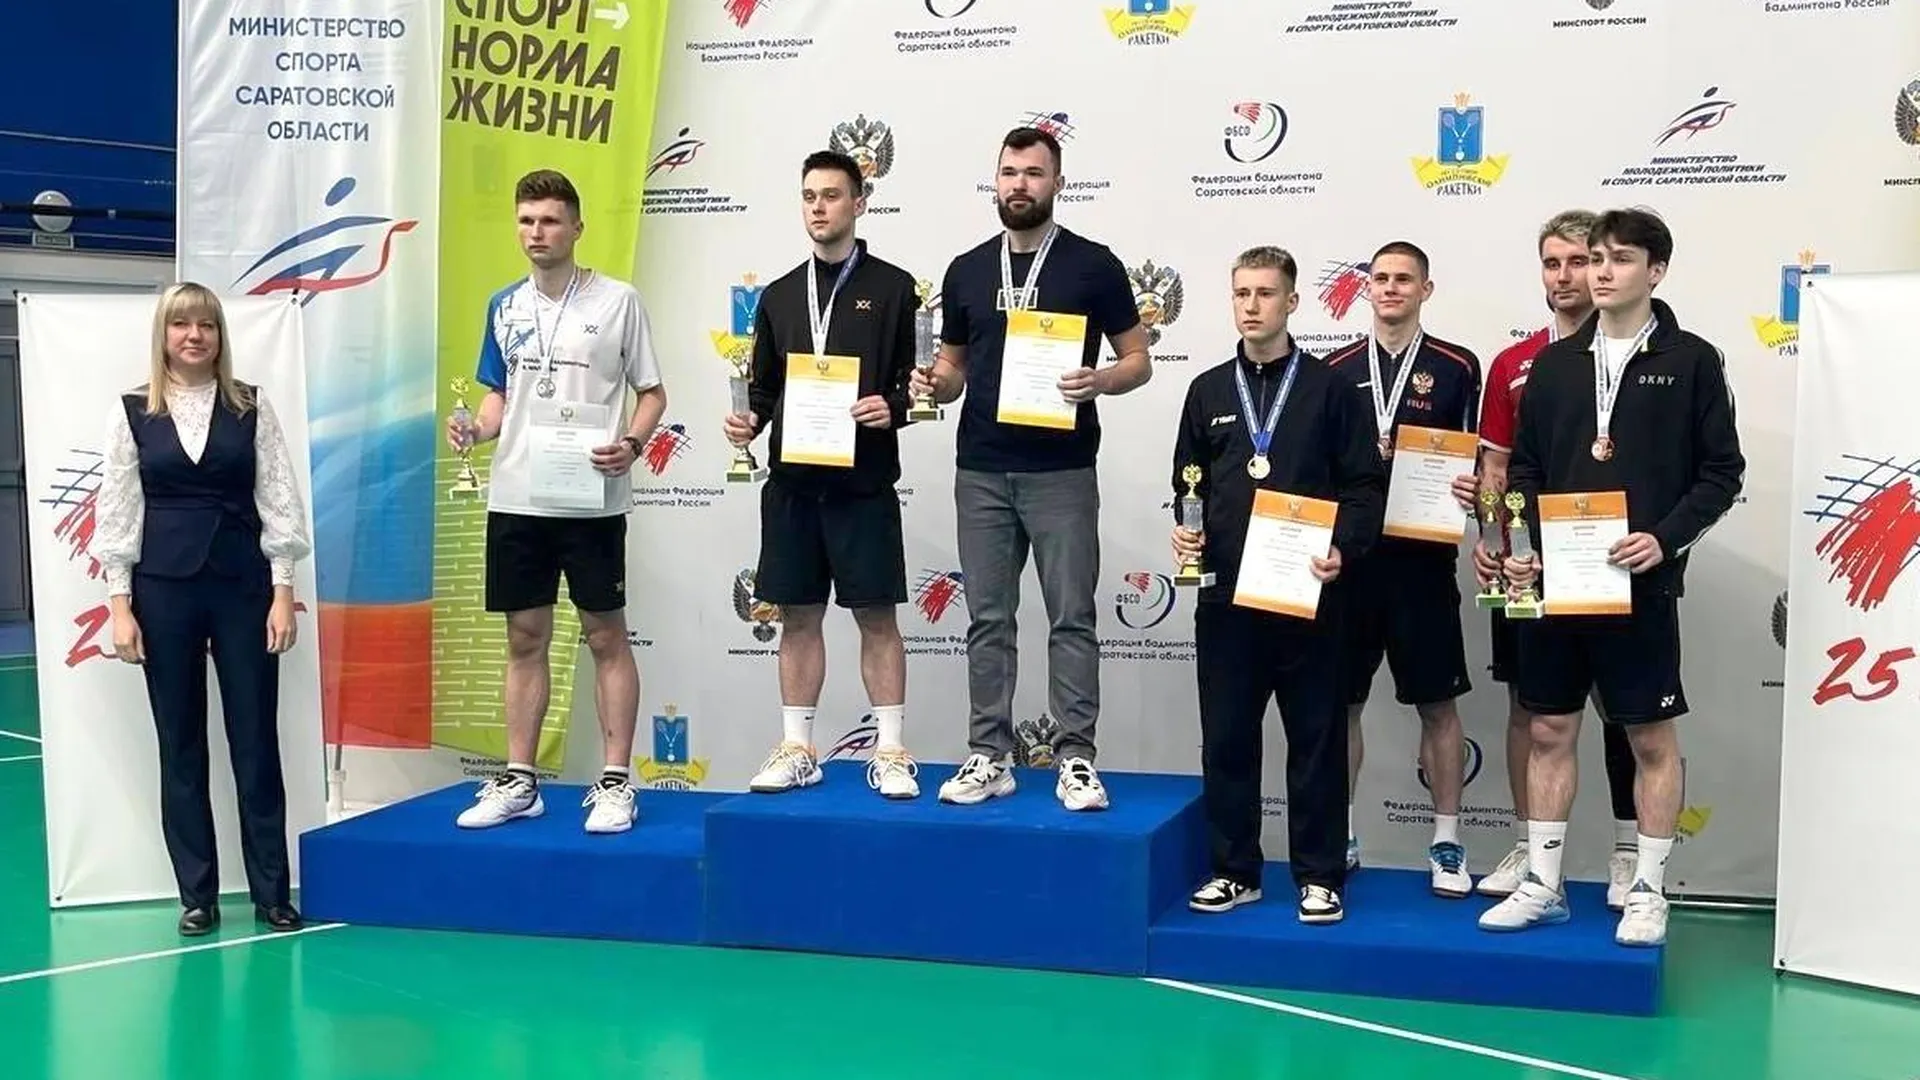 Студенты Коломны завоевали 5 медалей на Всероссийском Кубке по бадминтону